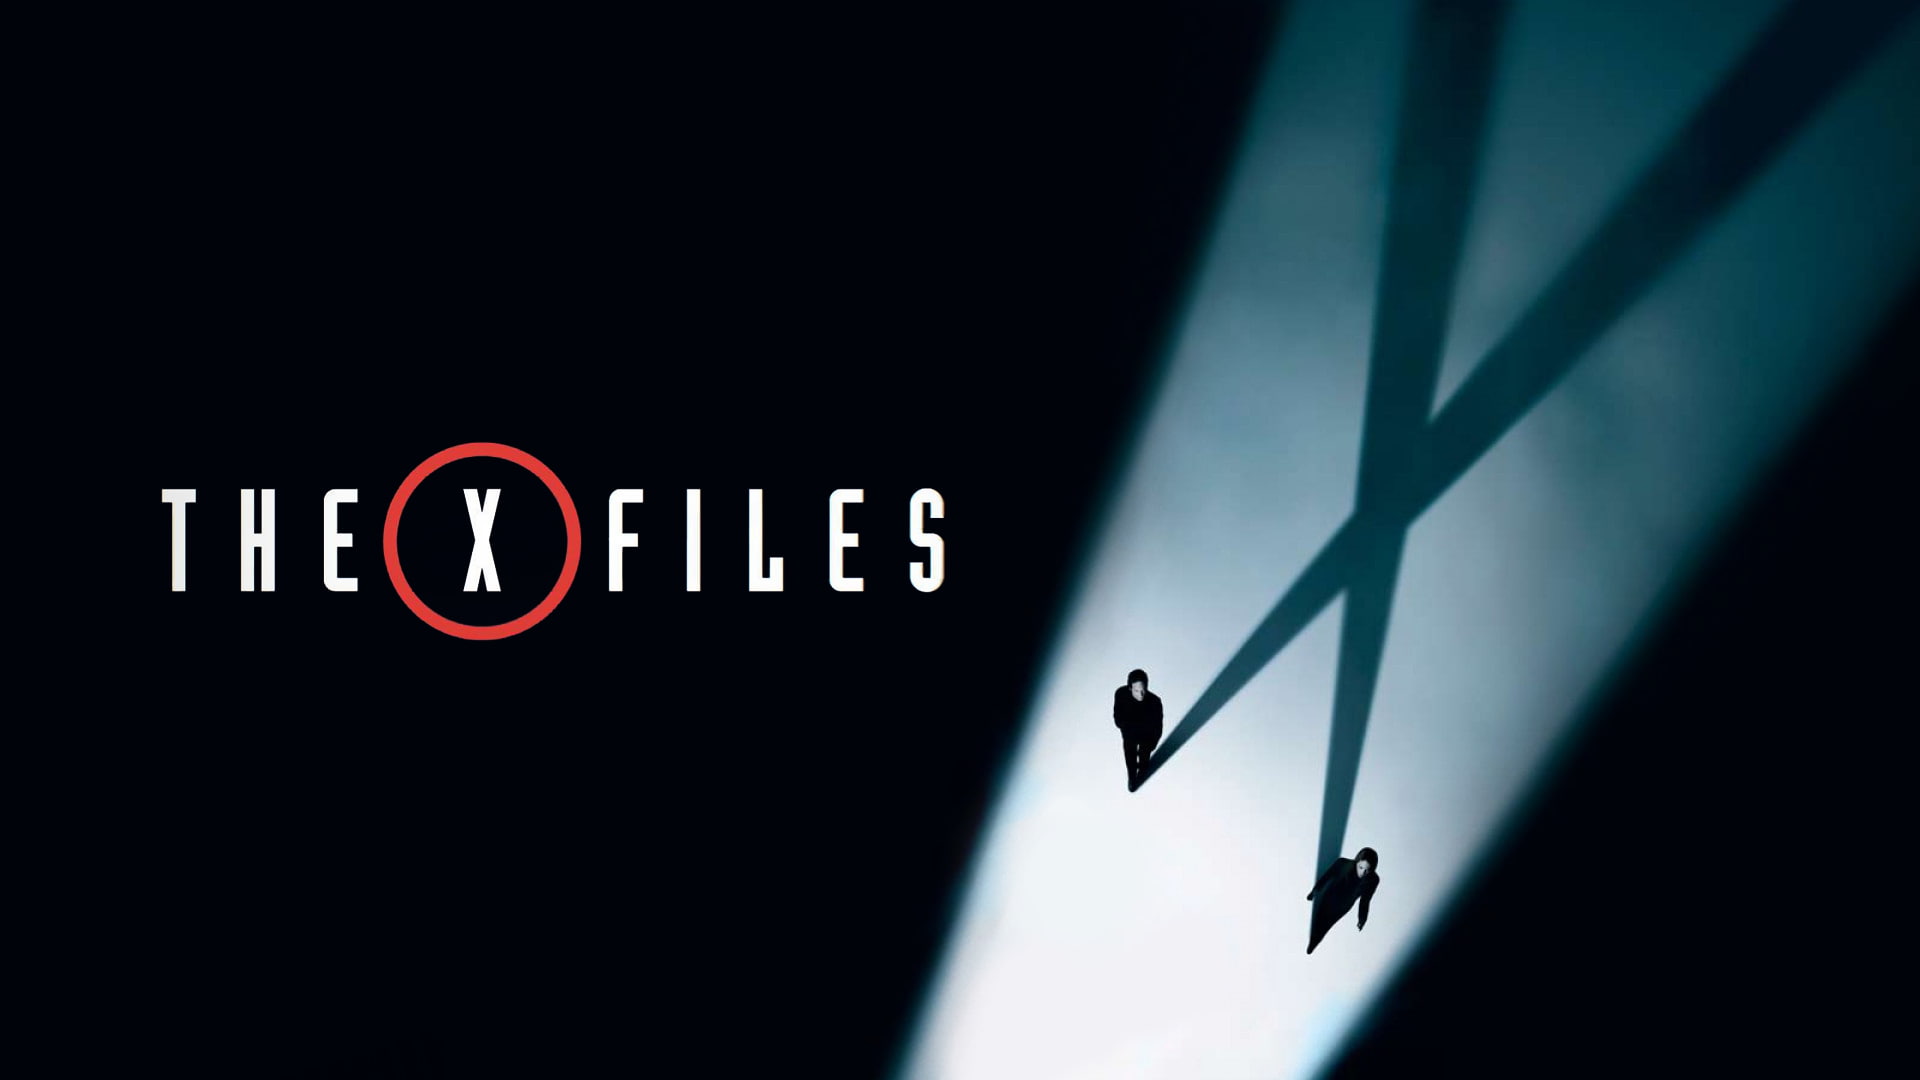 The X-Files, Dana Scully, Gillian Anderson, David Duchovny